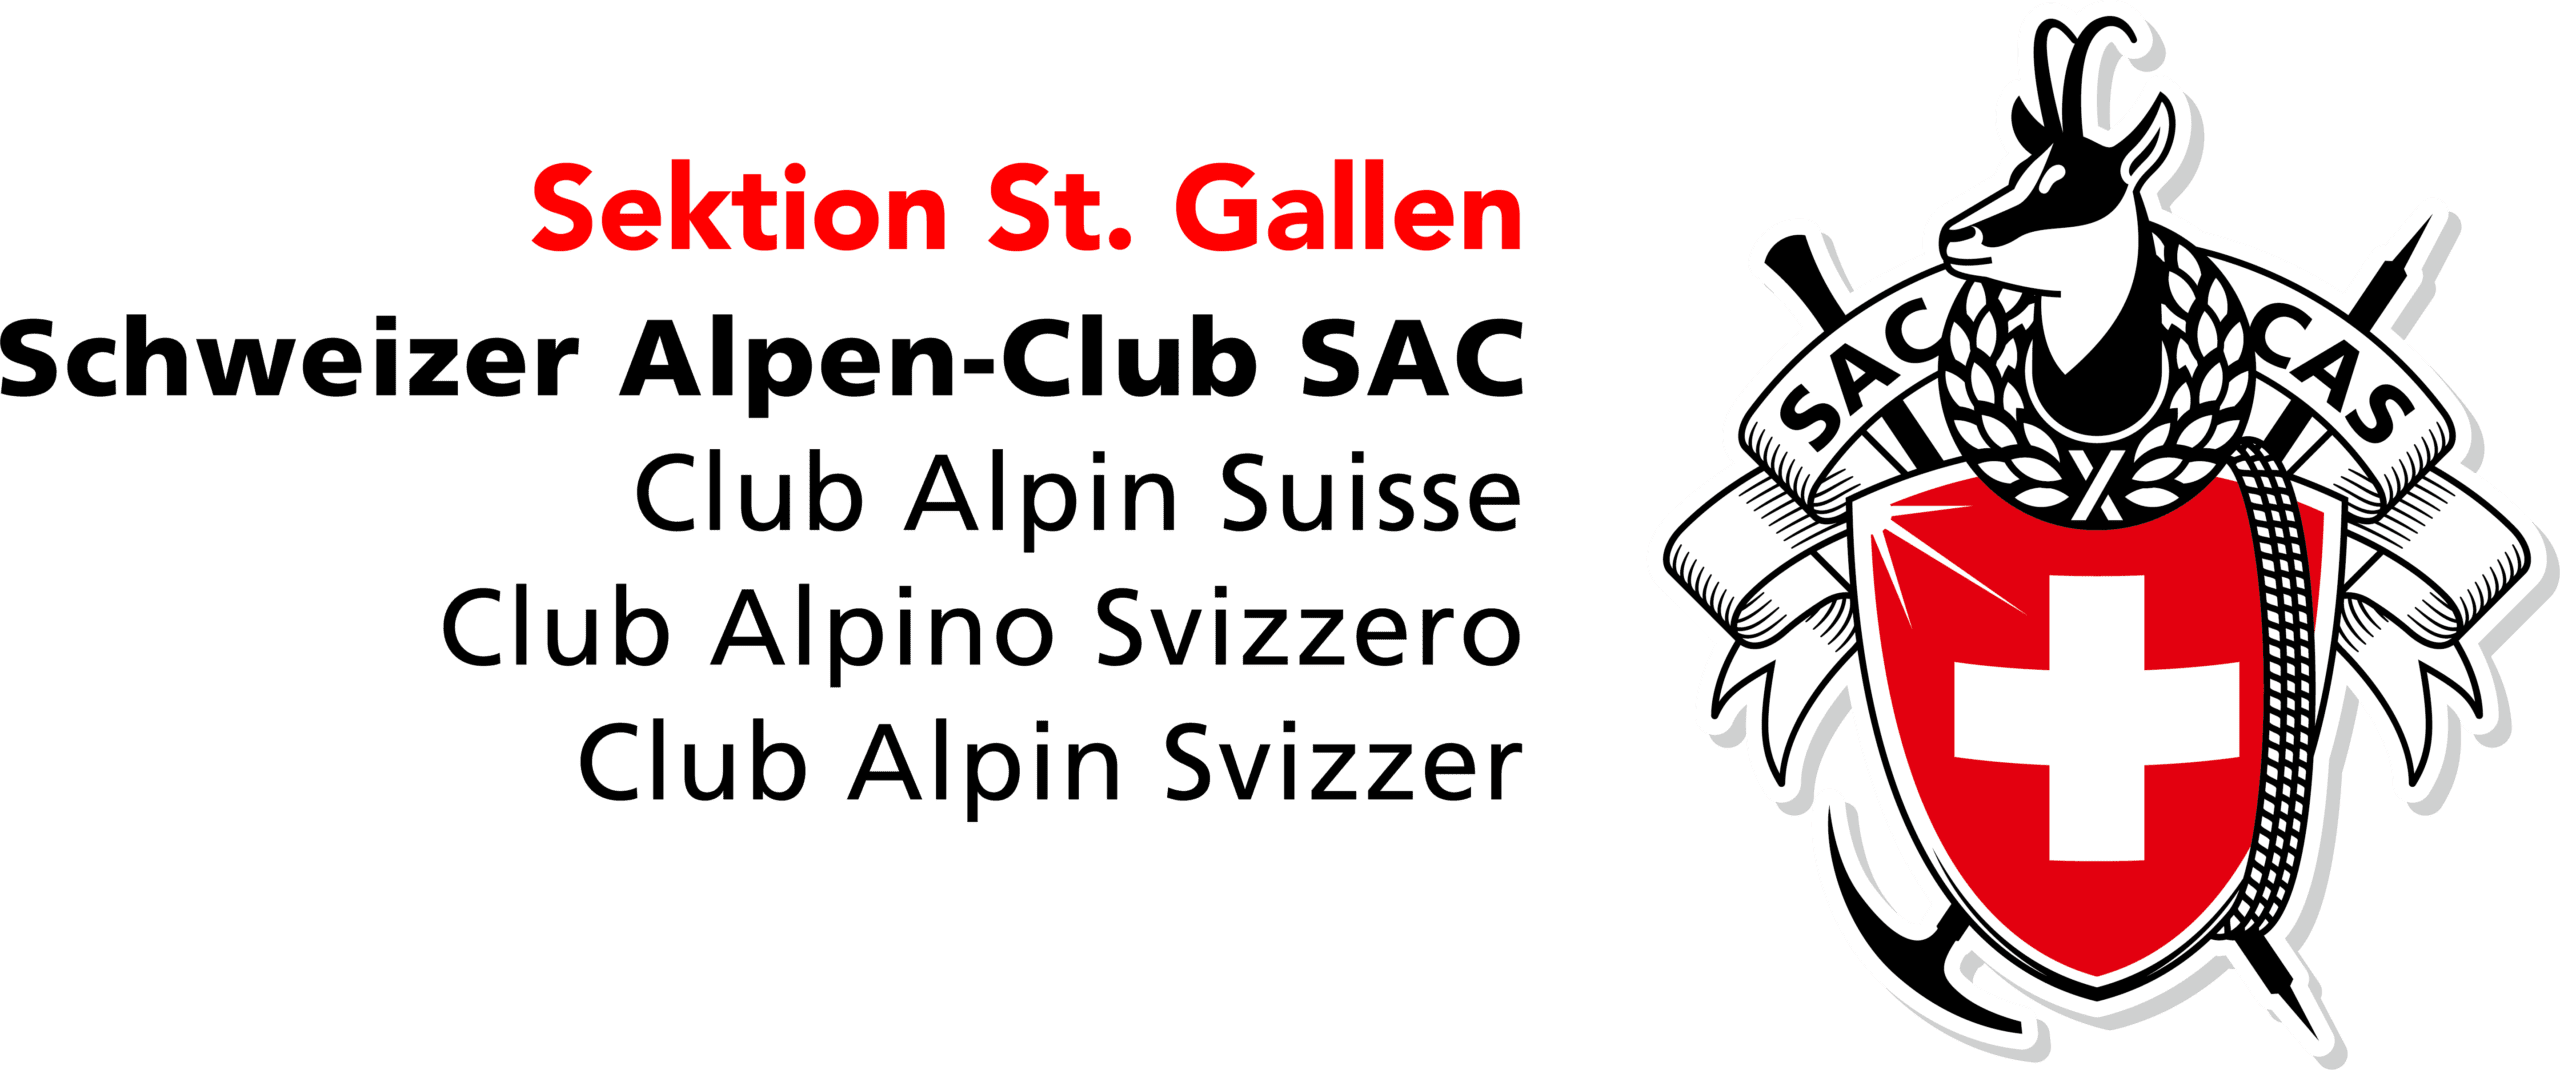 Schweizer Alpenclub SAC – Sektion St. Gallen